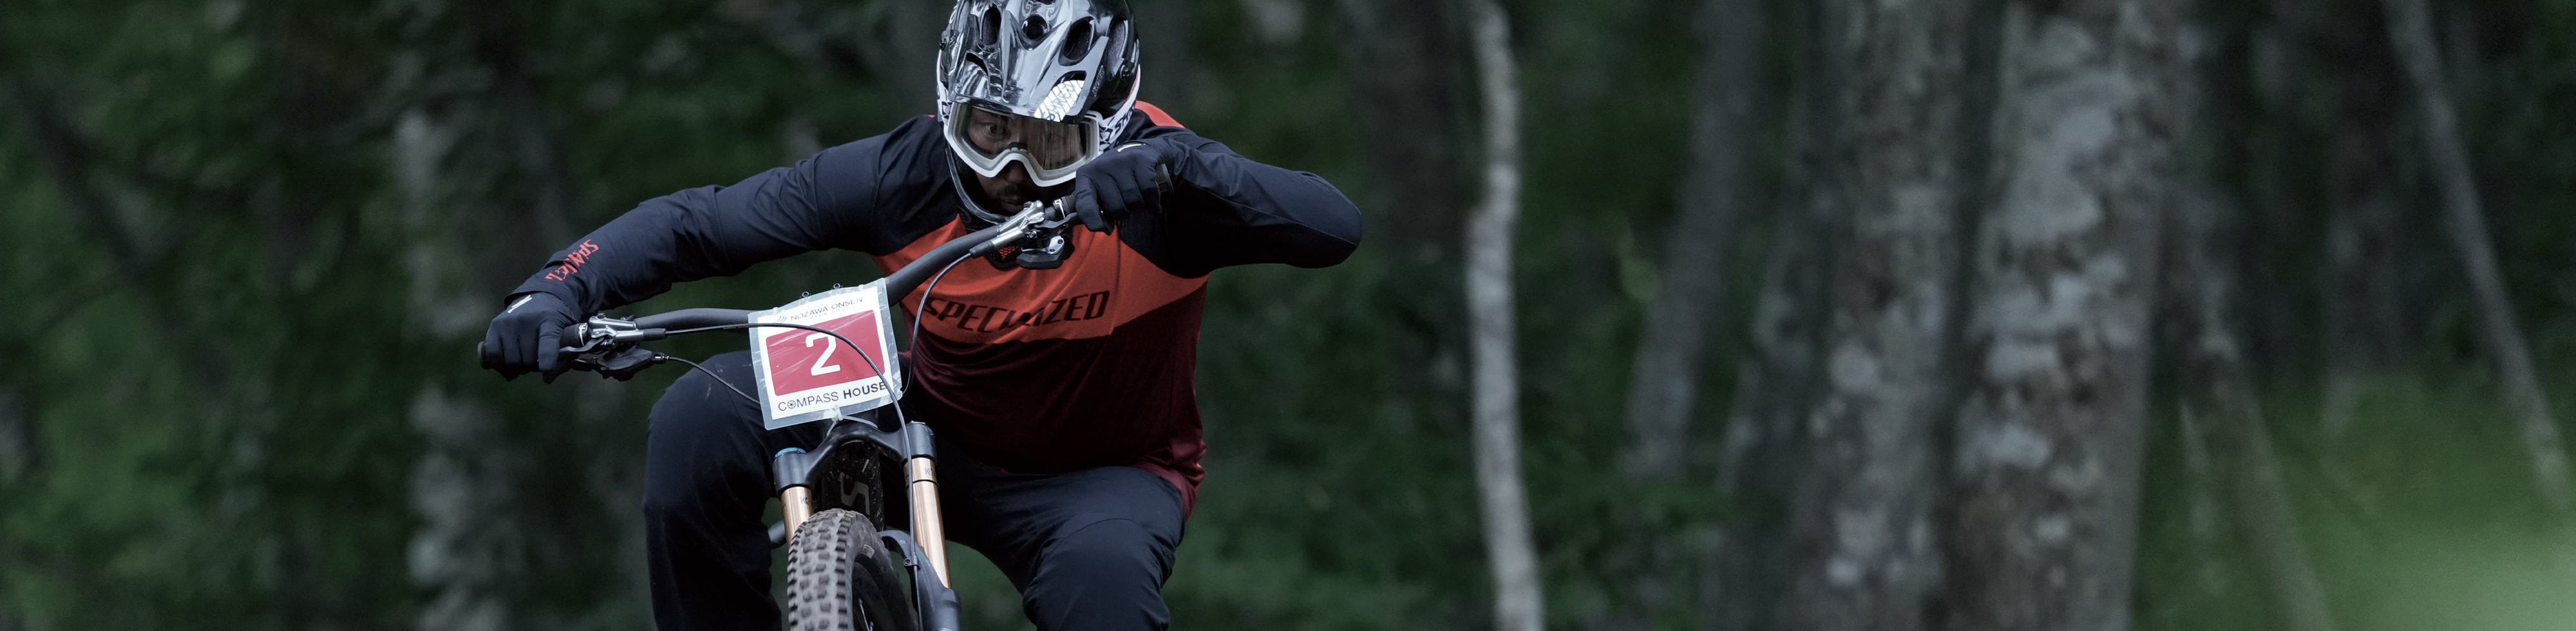 תמונה לדוגמה של רוכב אופנוע תחרותי בתנועה, במוקד עם רקע של יער עם אפקט בוקה